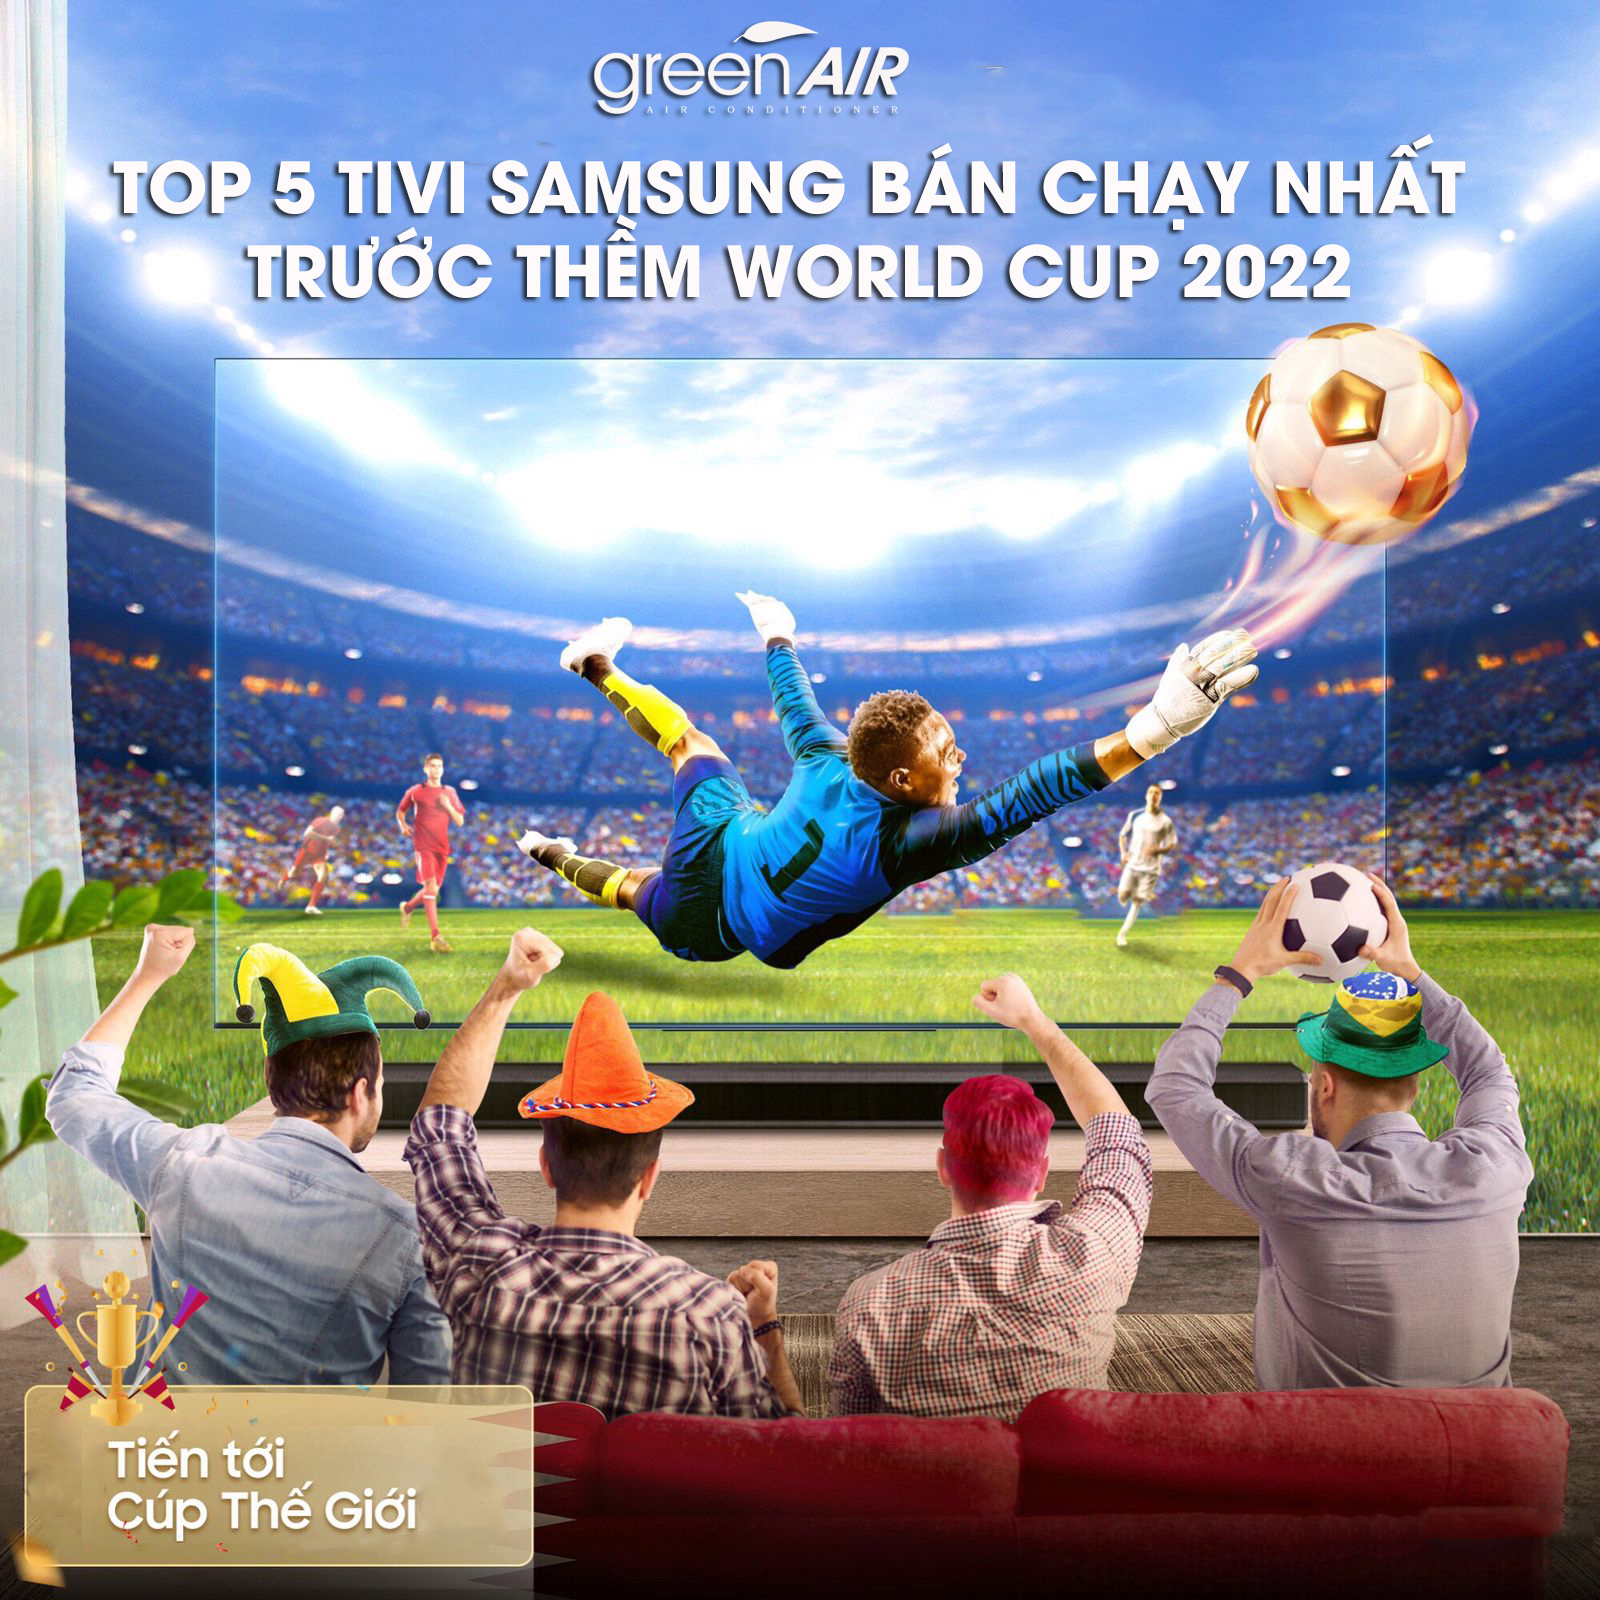 TOP 5 TIVI SAMSUNG BÁN CHẠY NHẤT TRƯỚC THỀM WORLD CUP 2022